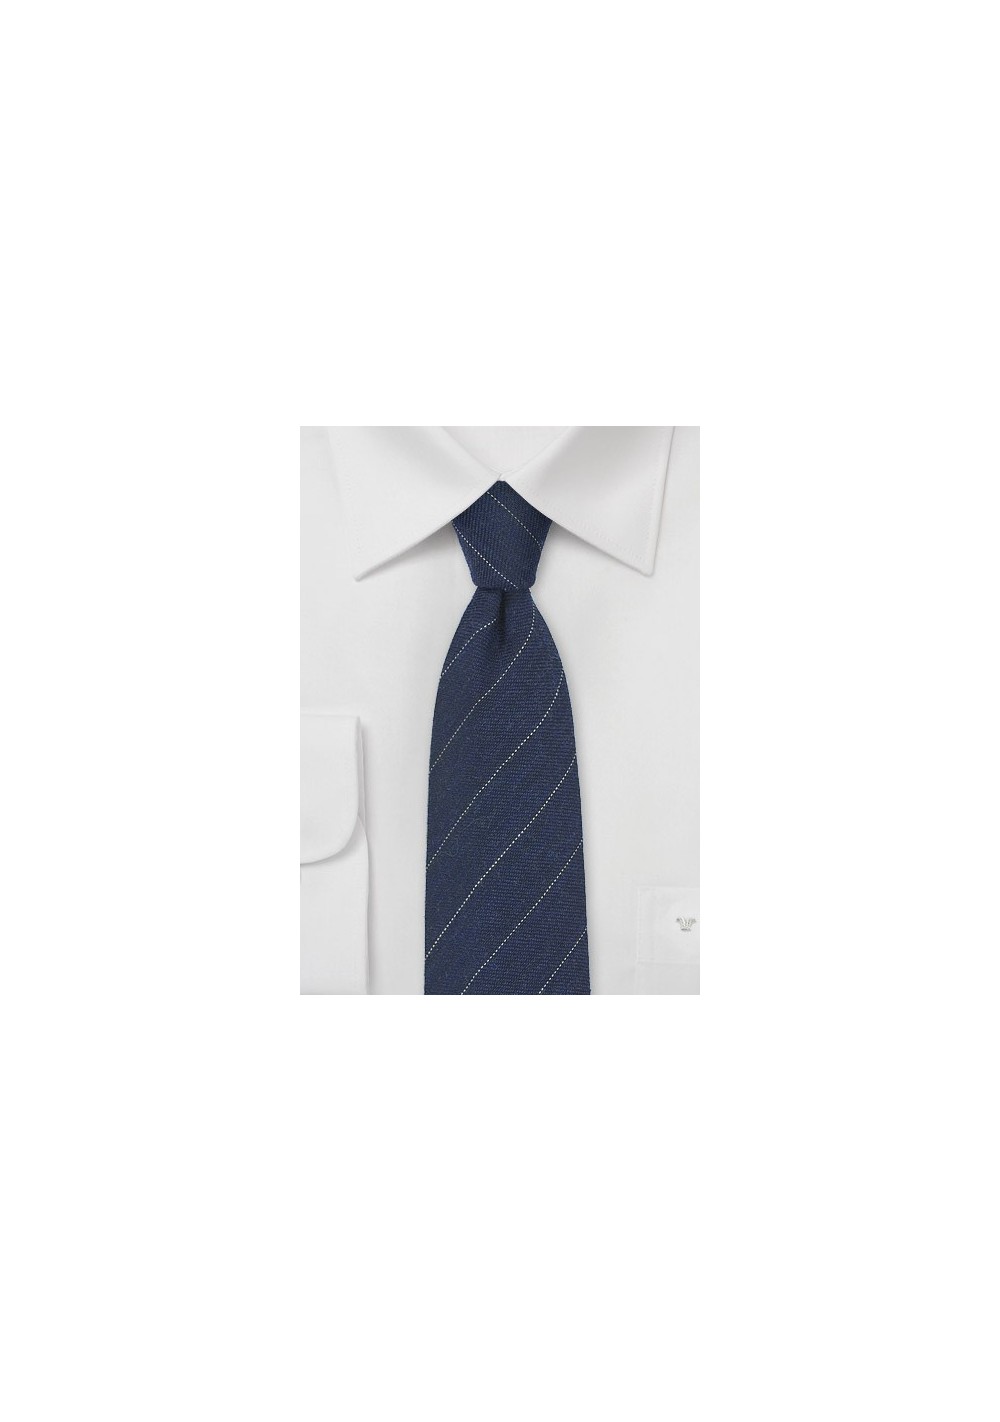 Wool Striped Tie in Navy Blue